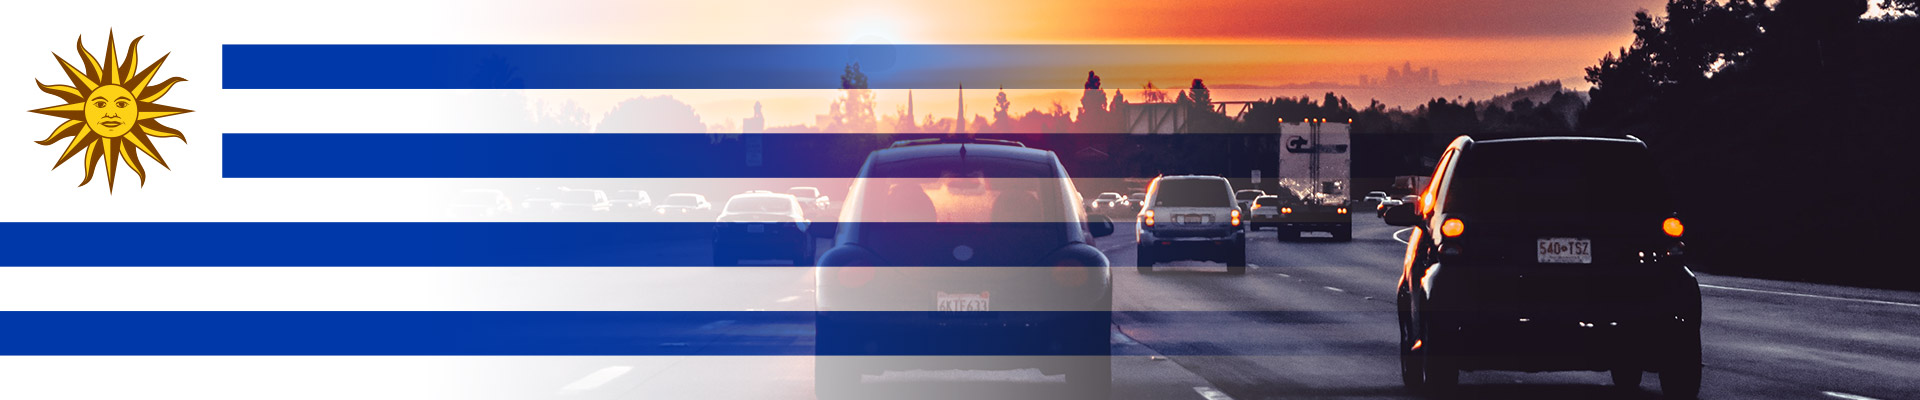 Renovar la libreta de conducir en Uruguay